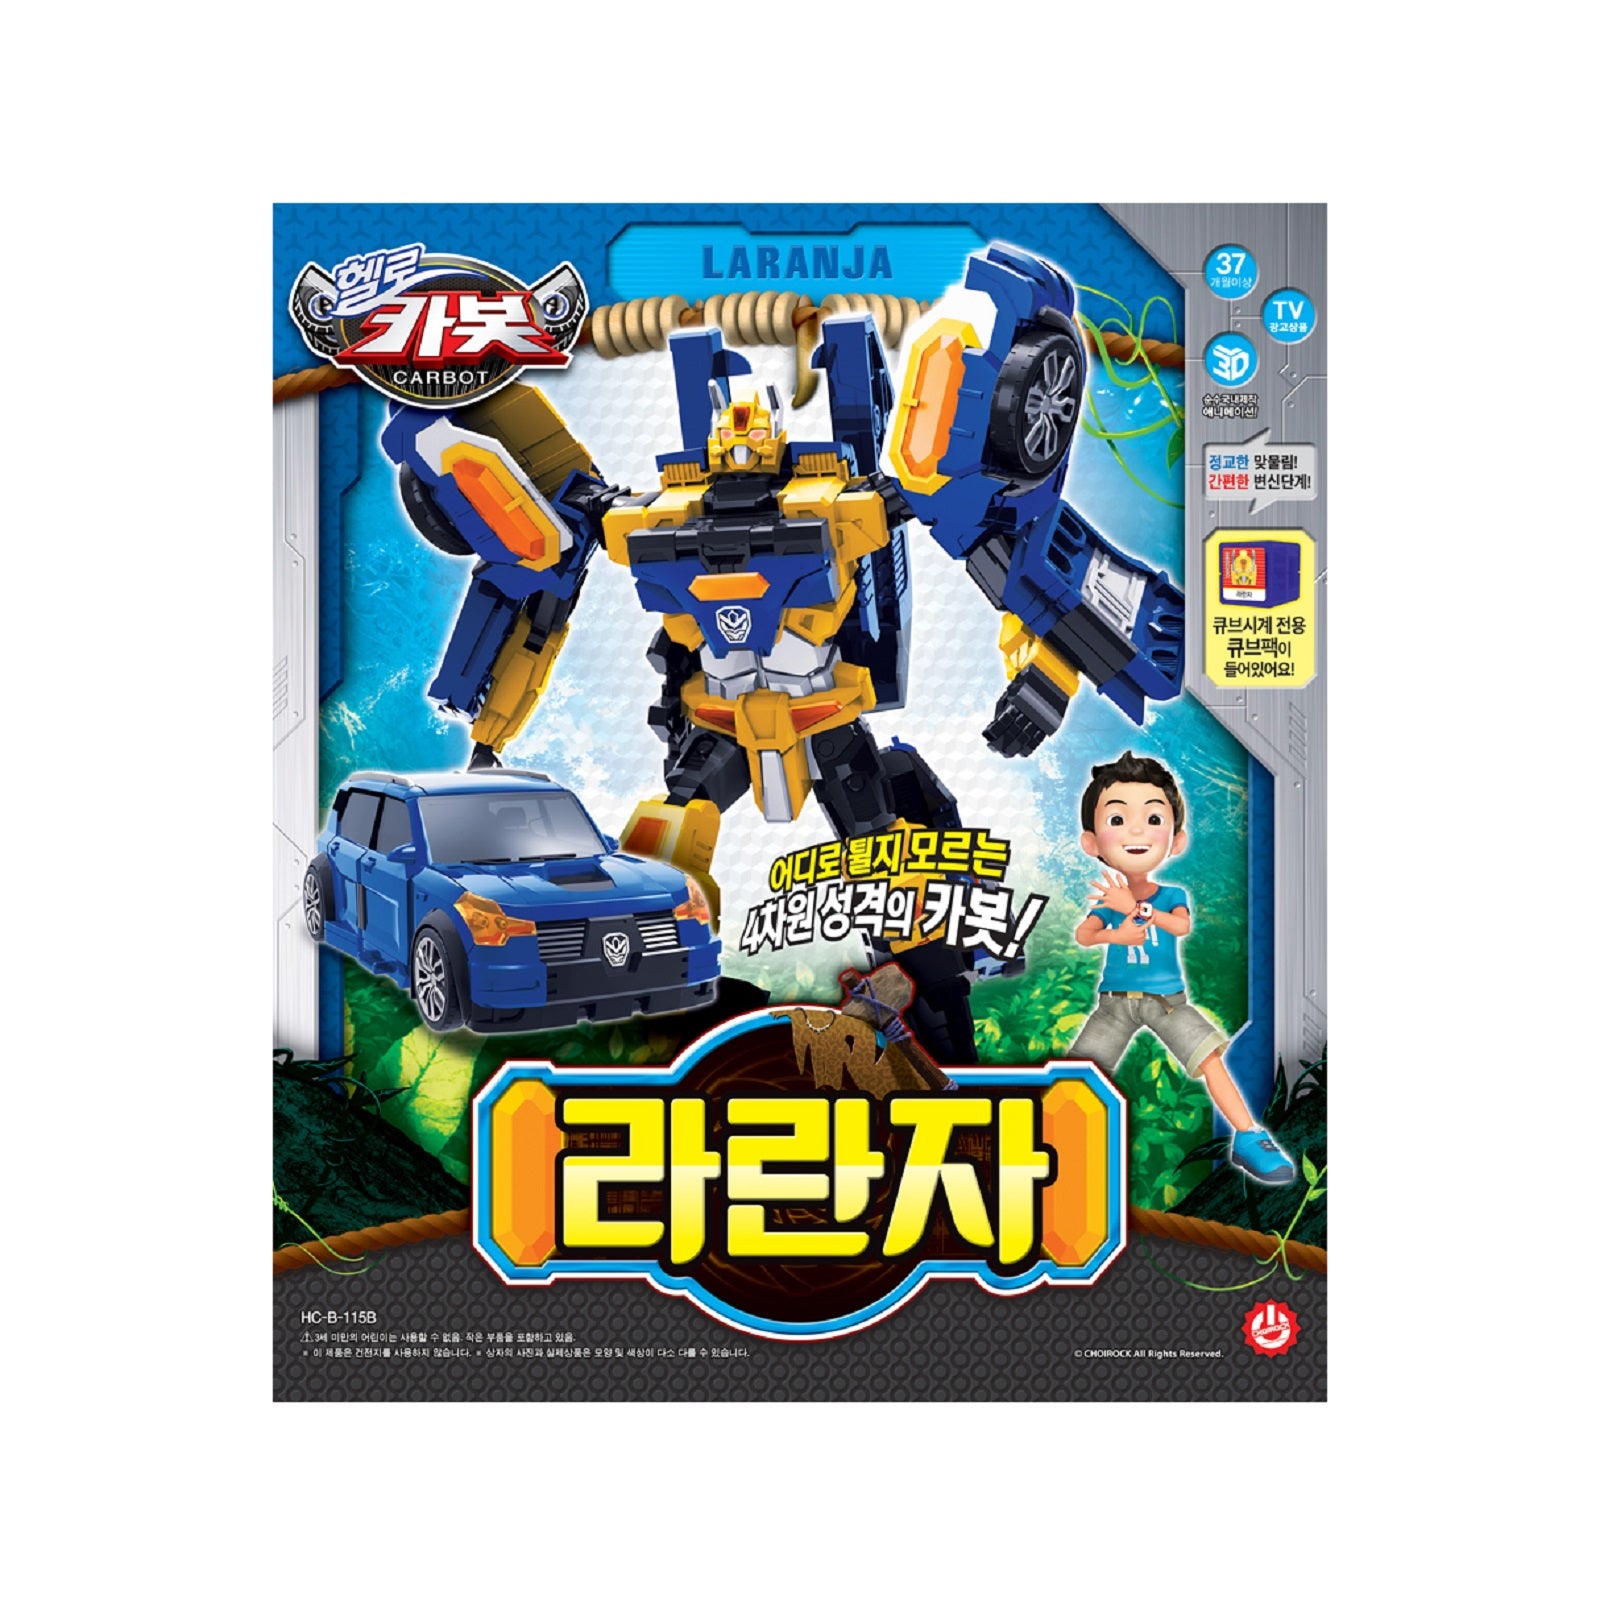 ハローカーボット ラランザ 韓国変身ロボットおもちゃ玩具 Hello 